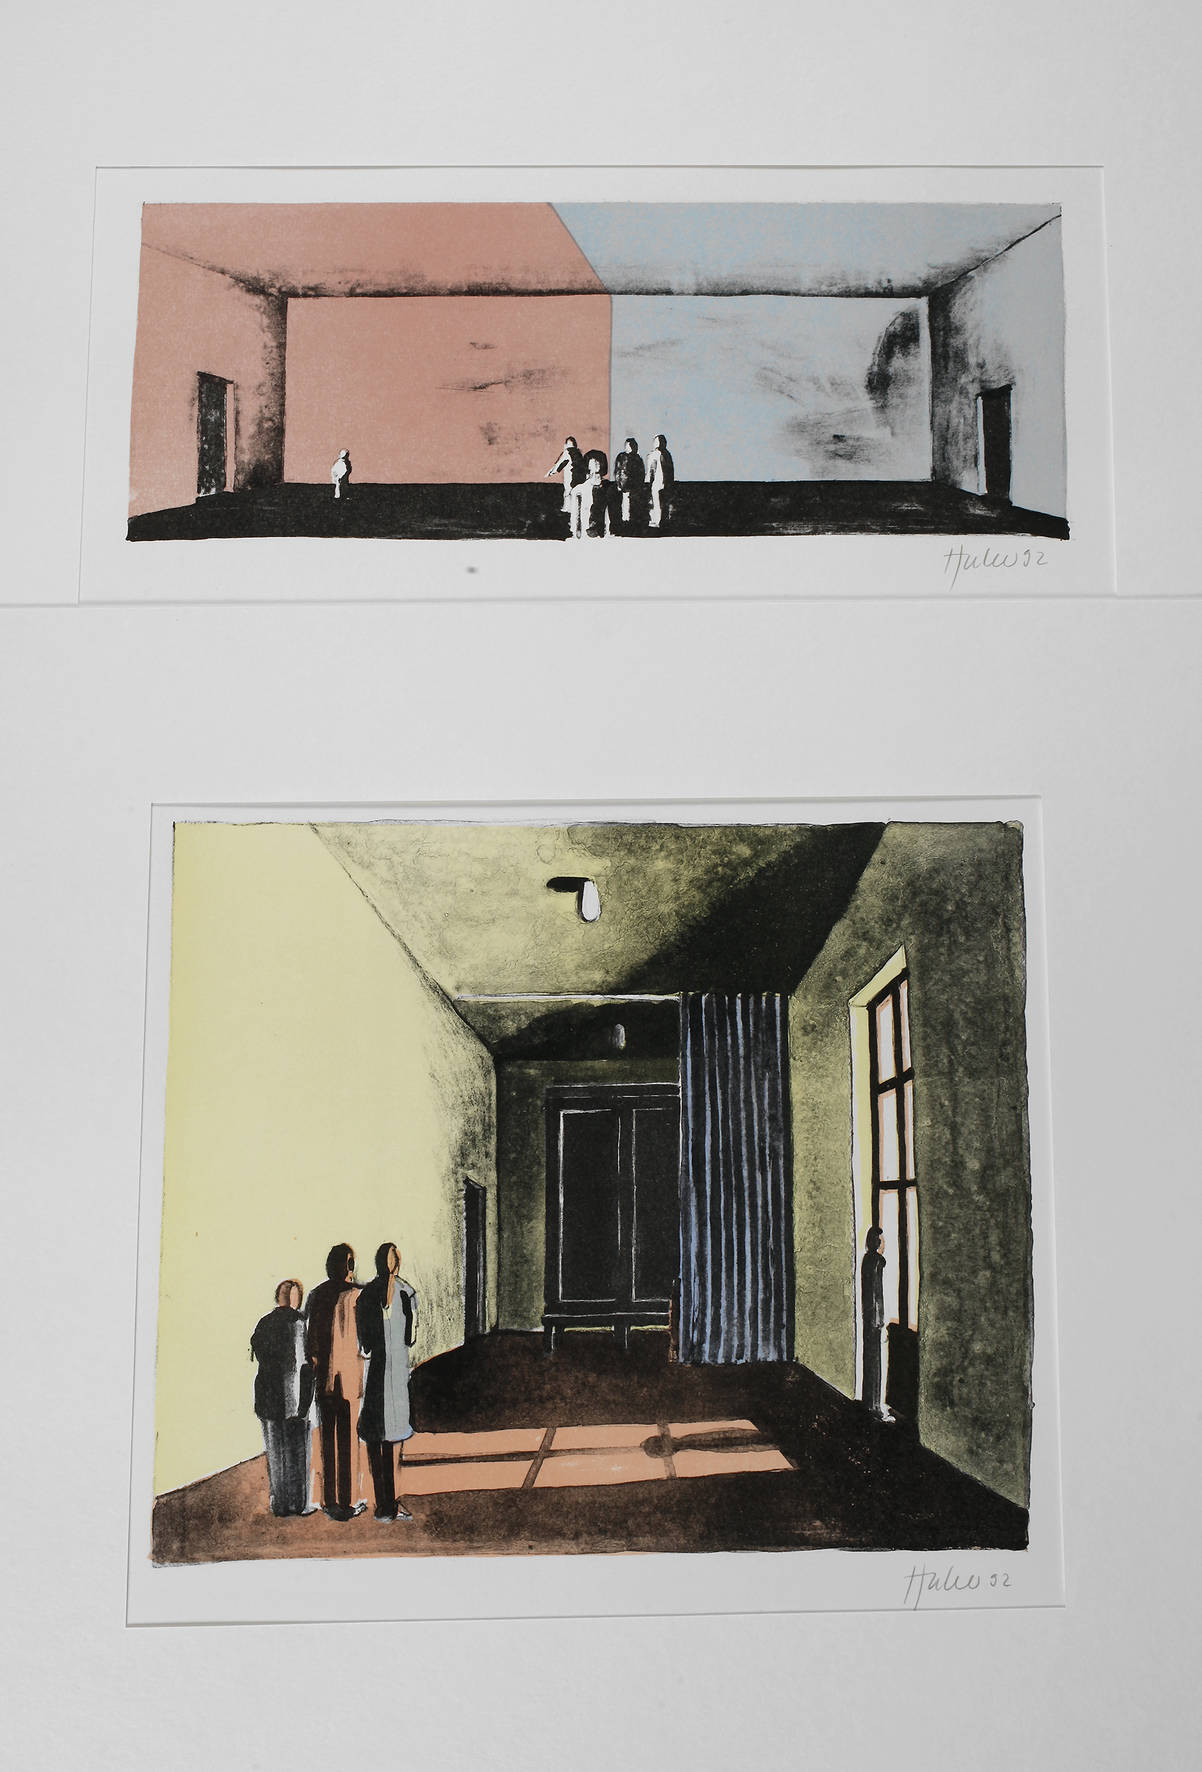 Thomas Huber, Zwei Farblithografien ”Besucher”